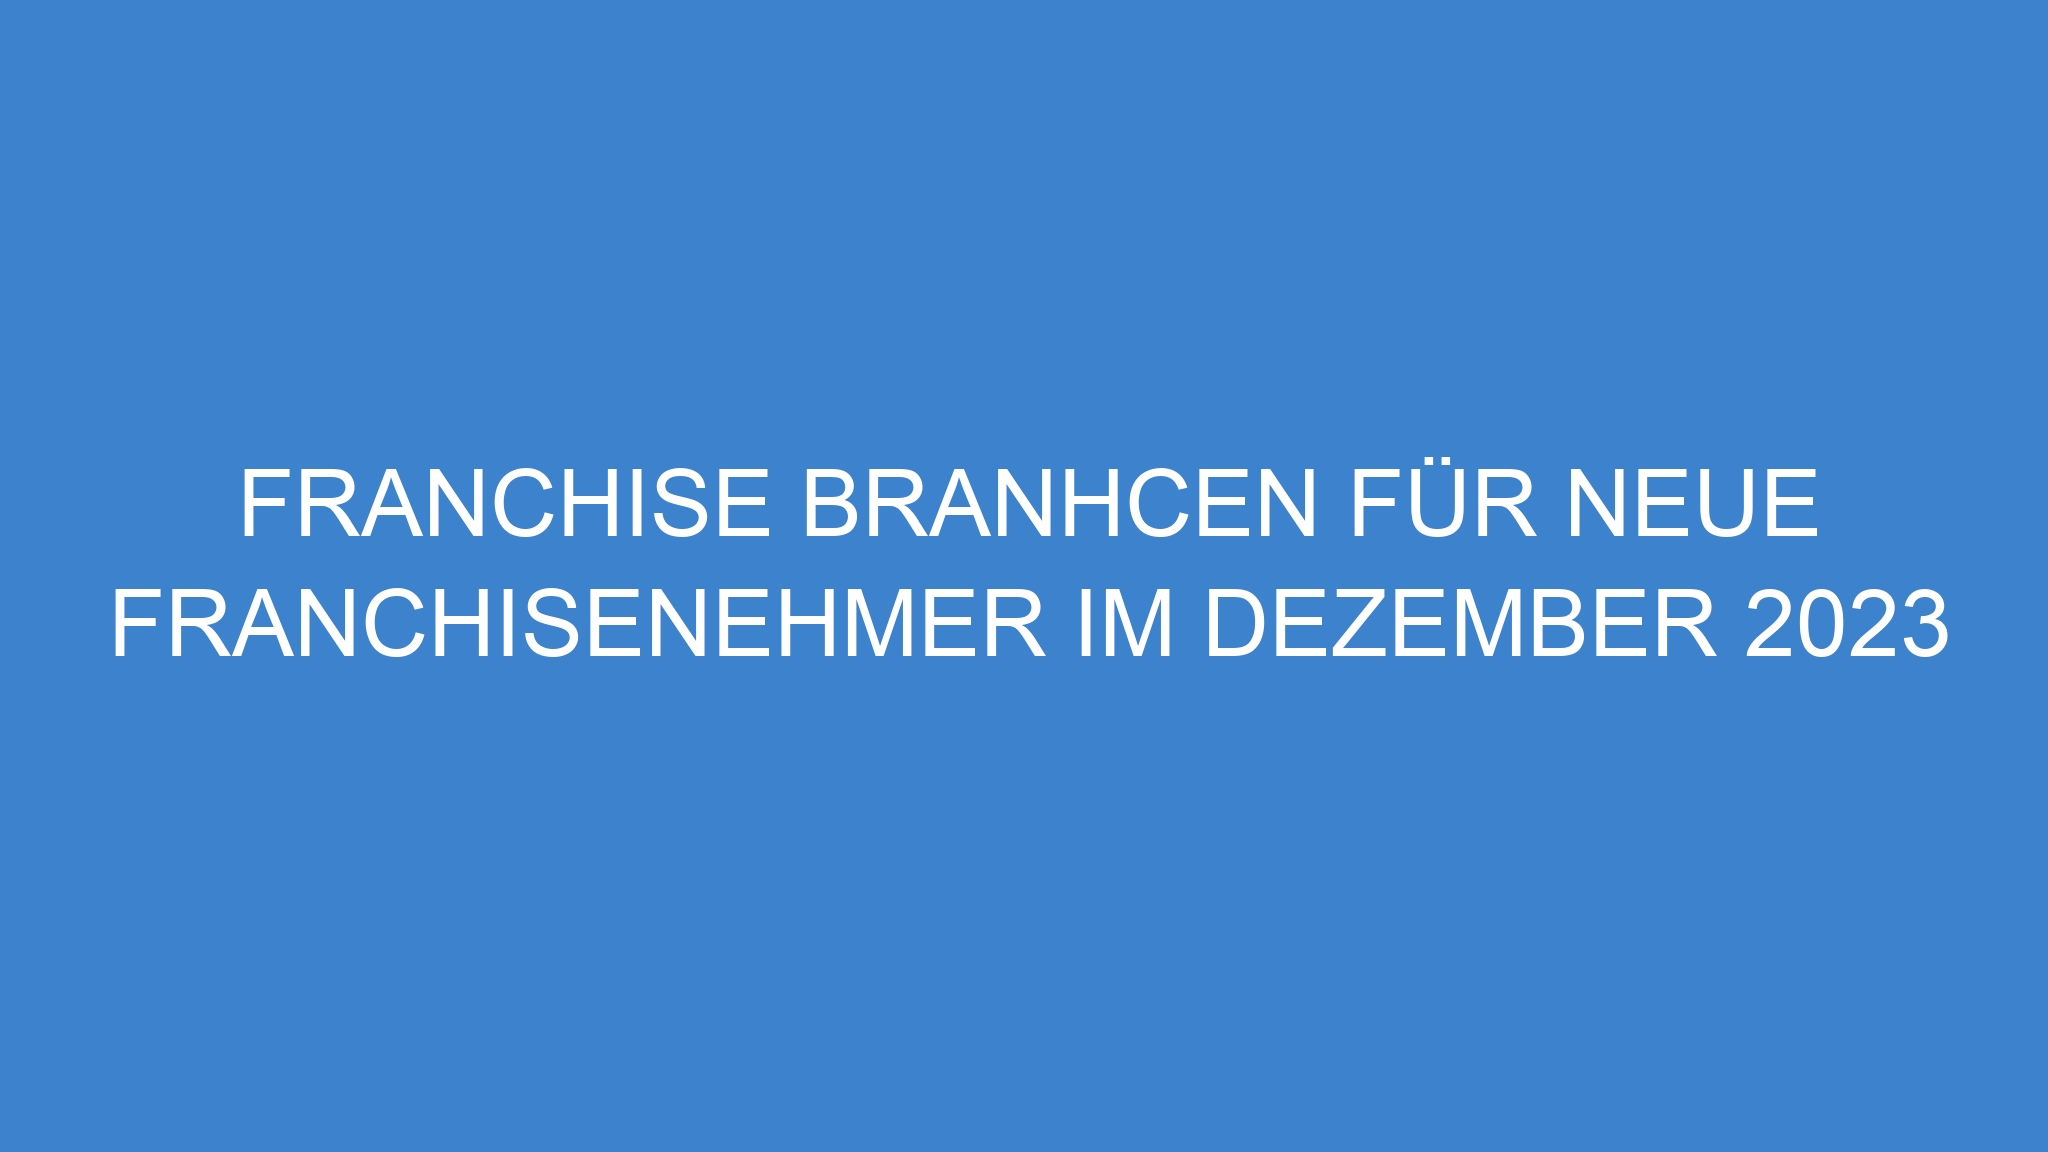 Franchise Branhcen für neue Franchisenehmer im Dezember 2023